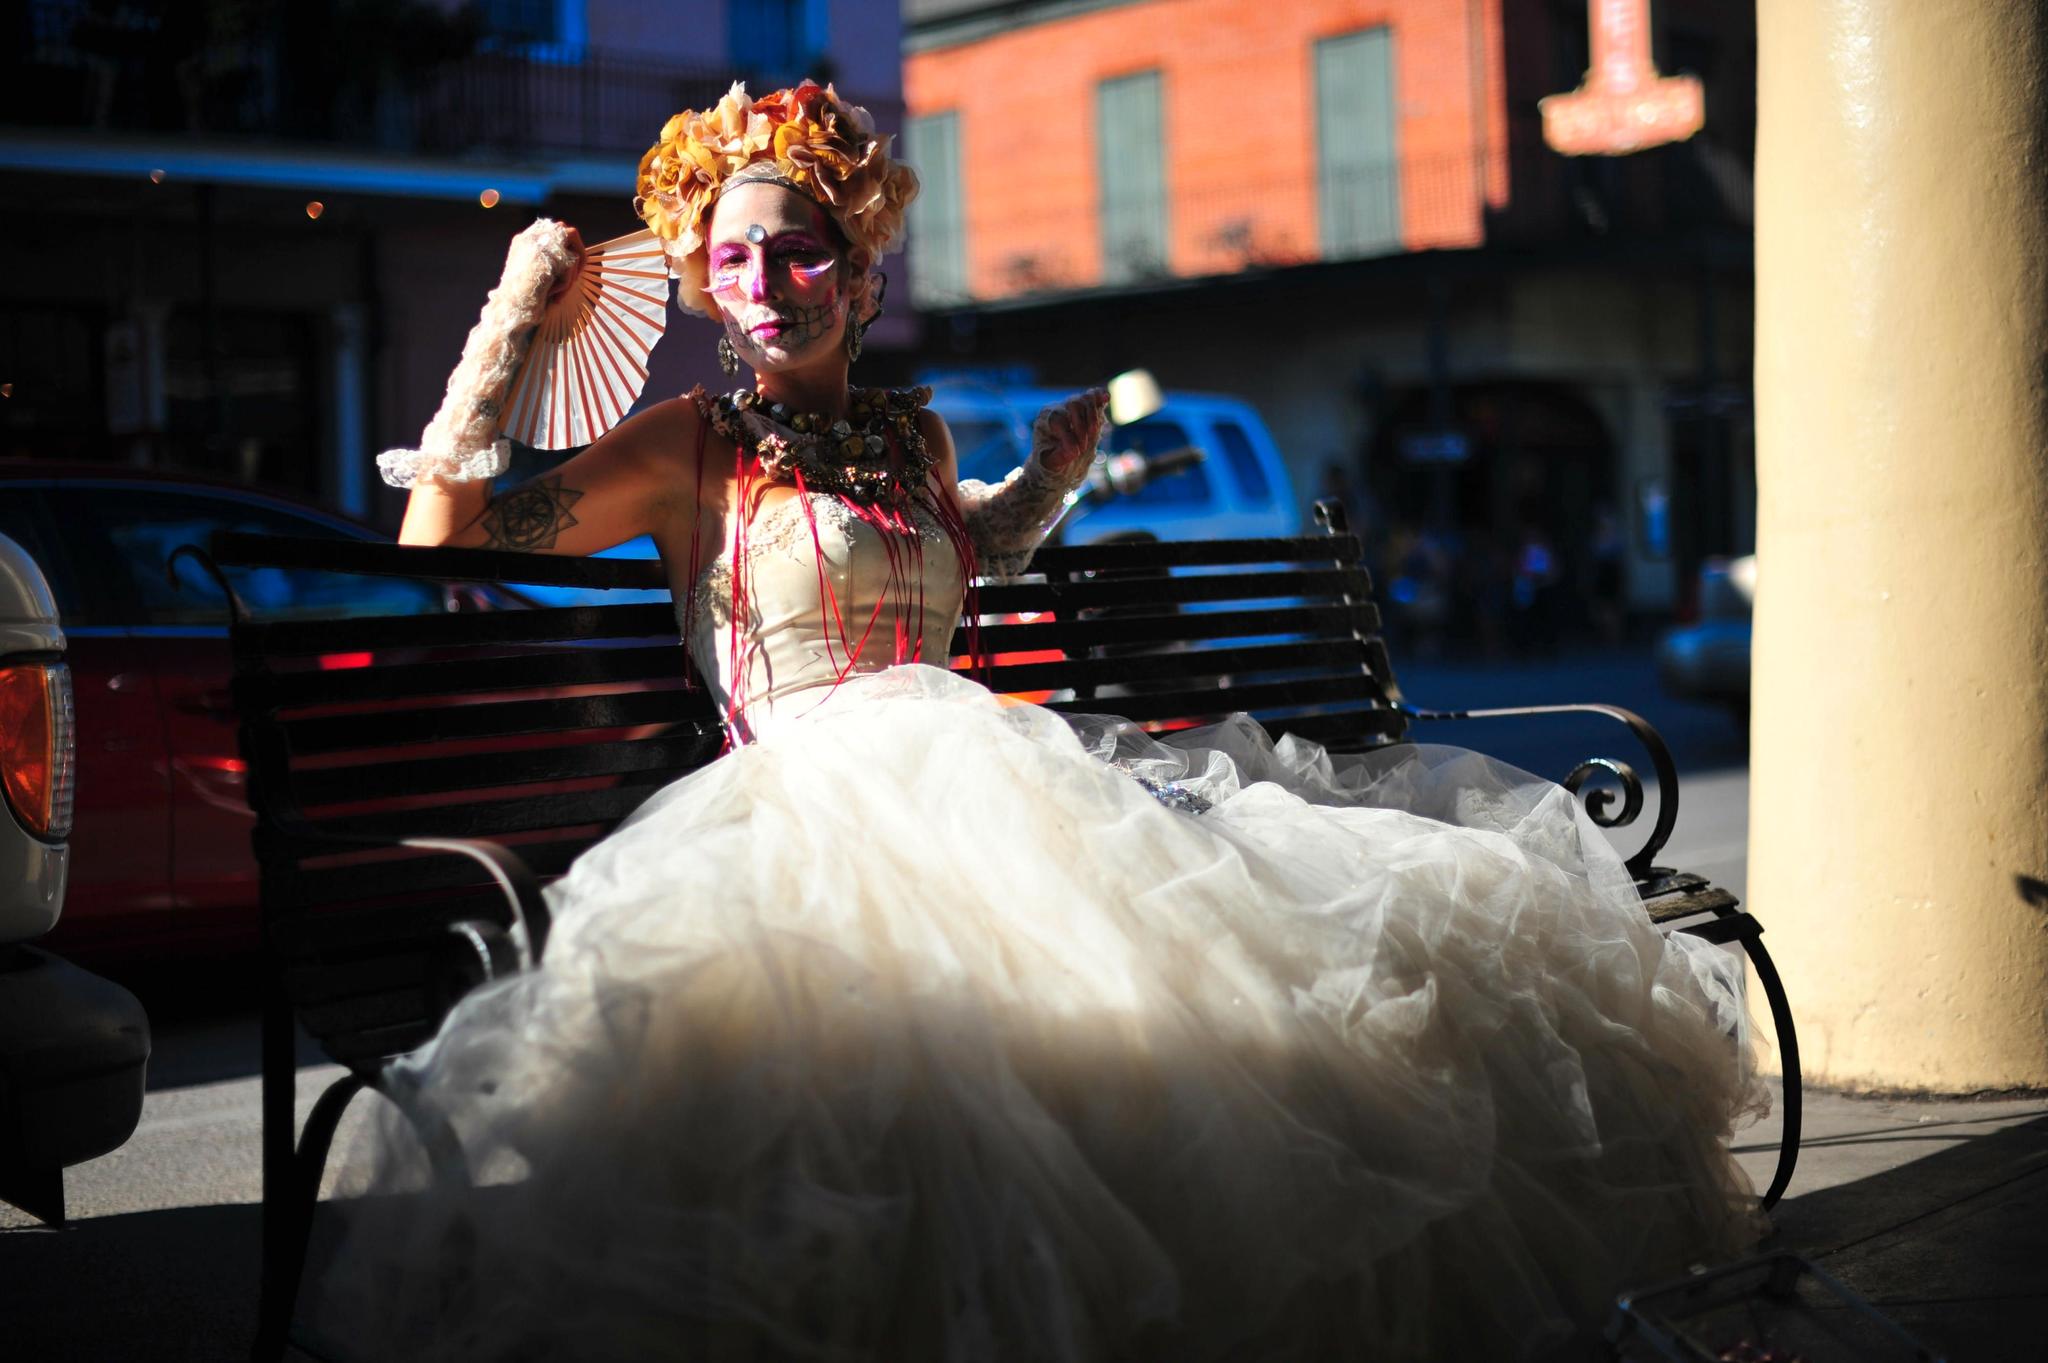 LEVENDE DØD: I French Quarter kan gateartistene gjøre gode penger ved å stille opp til fotografering, slik som denne kvinnen med skjelettsminke og brudekjole.